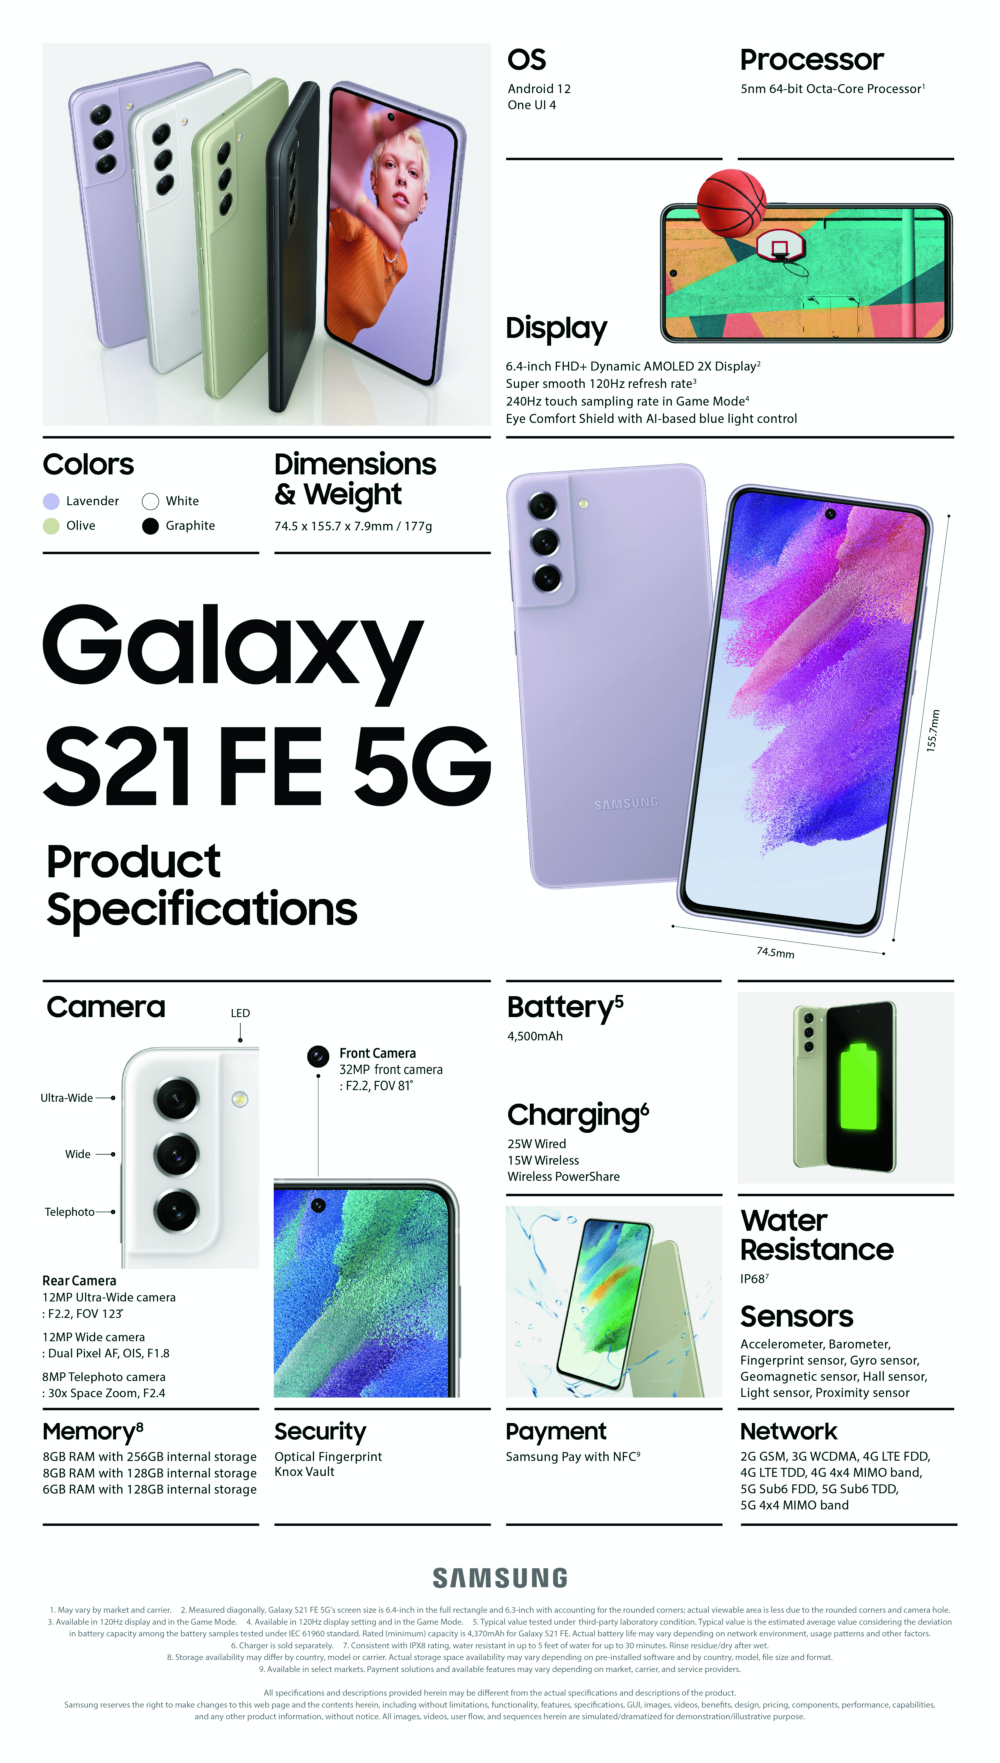 Samsung Galaxy S21 FE 5G spec sheets © © Samsung